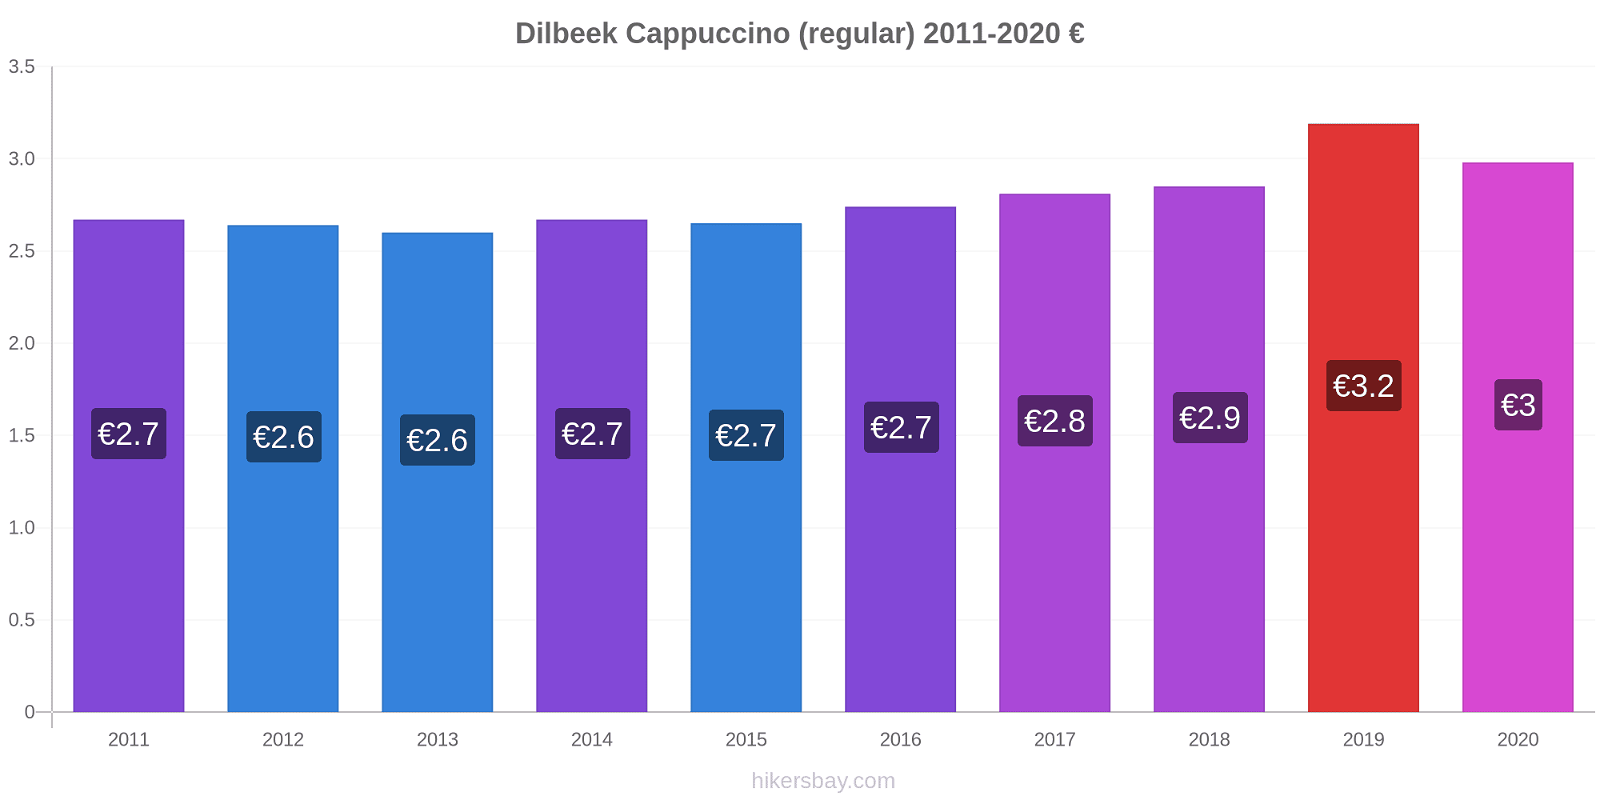 Dilbeek variação de preço Capuccino (regular) hikersbay.com